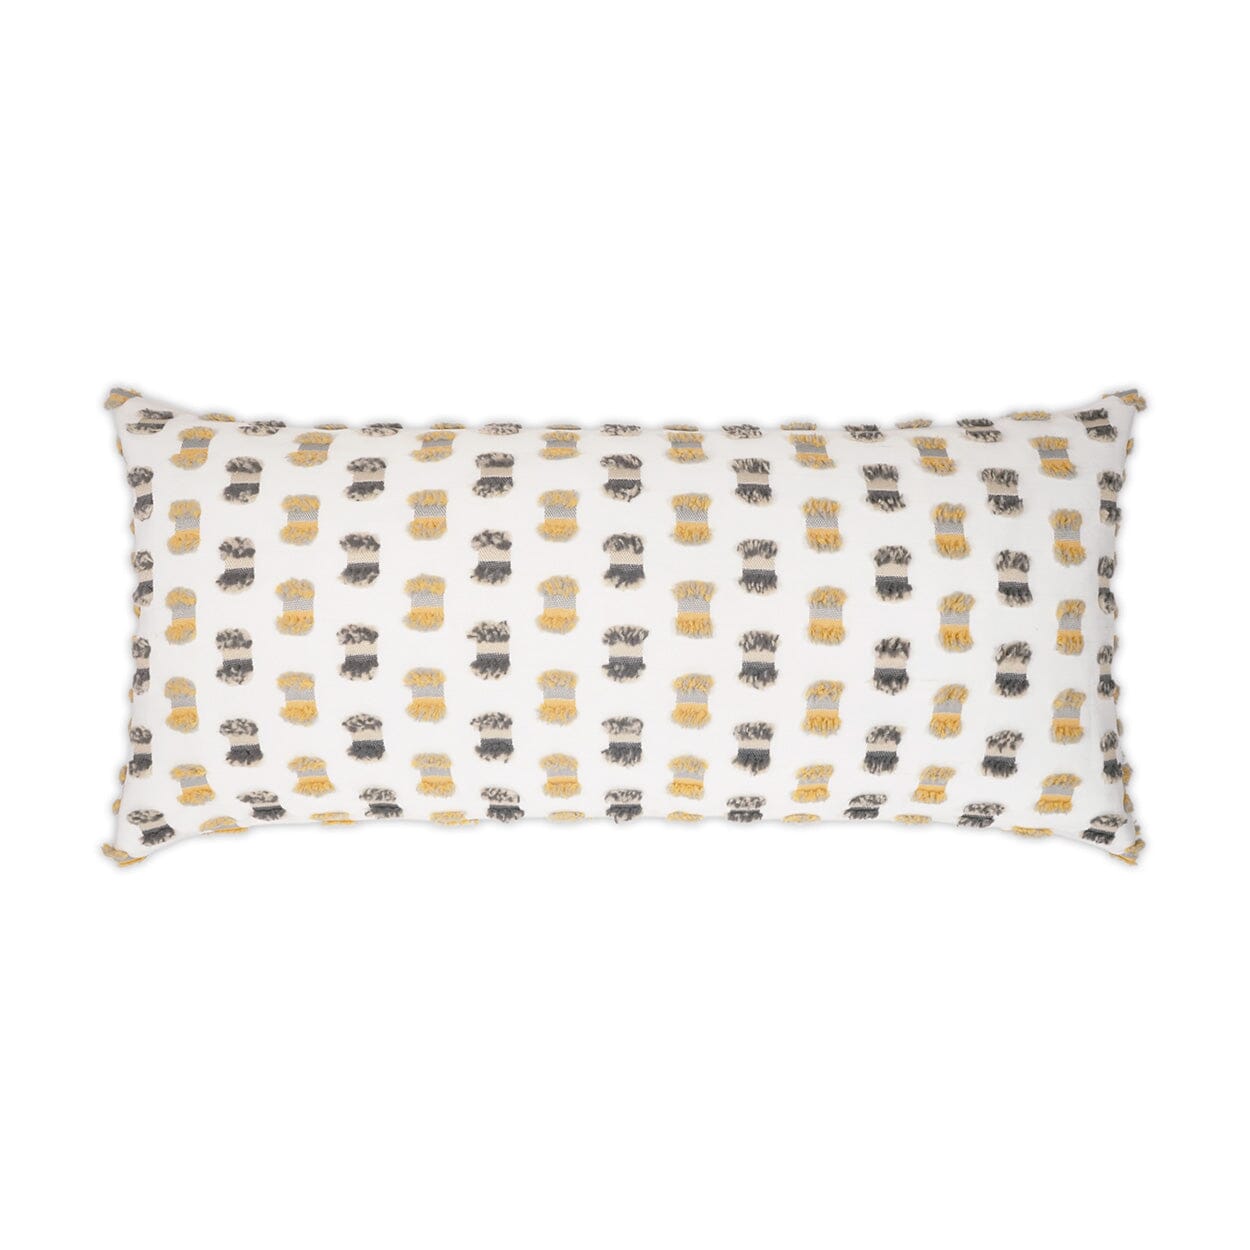 D.V. Kap 12" x 24" Outdoor Lumbar Pillow | Fifi Sunray Pillows D.V Kap Outdoor